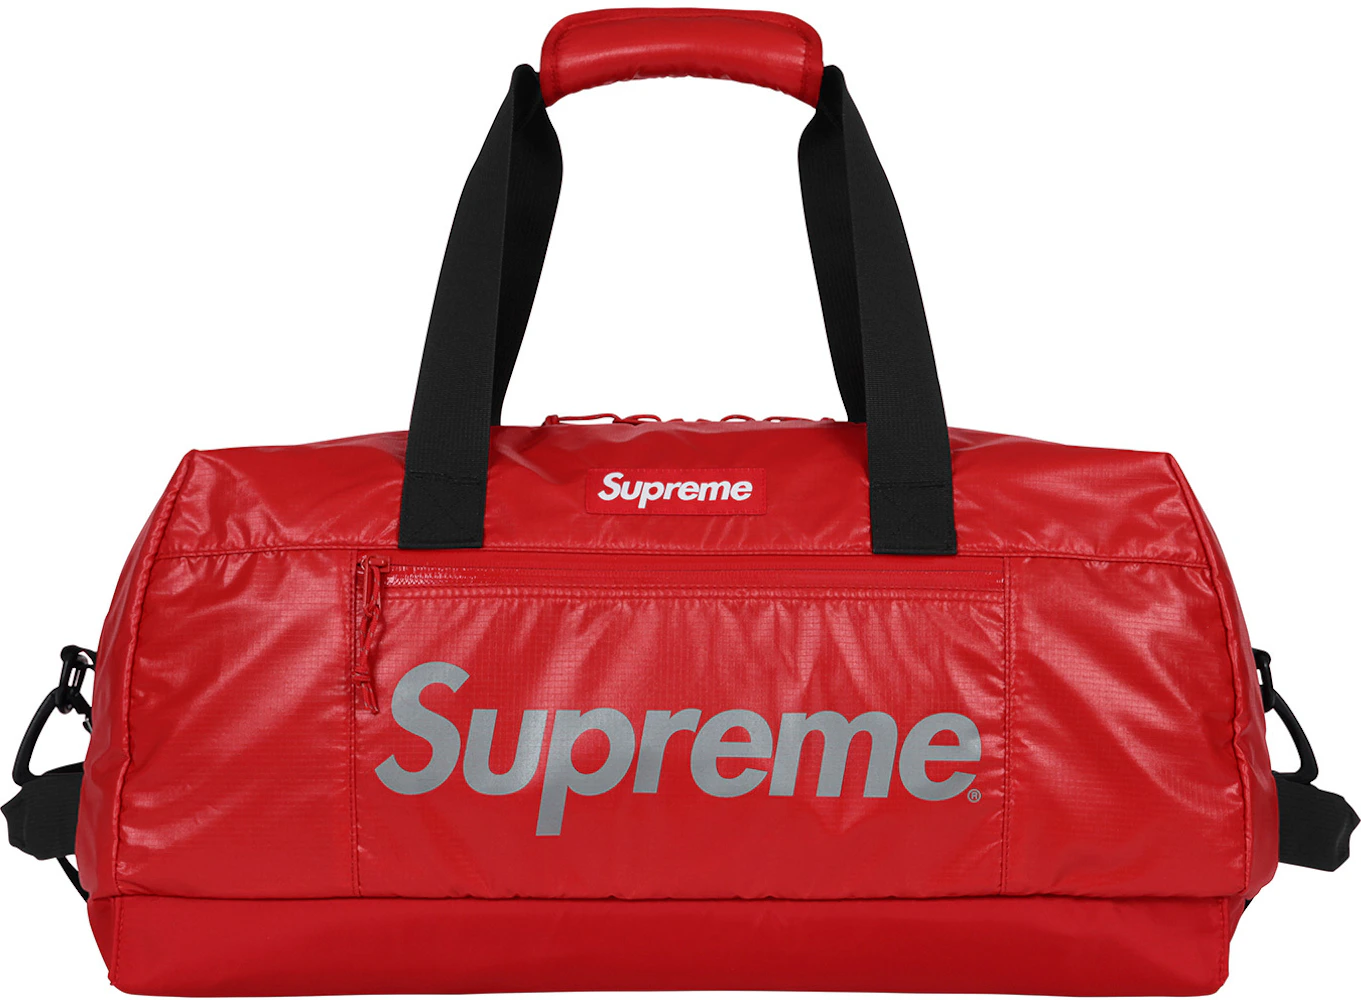 supreme duffle bag